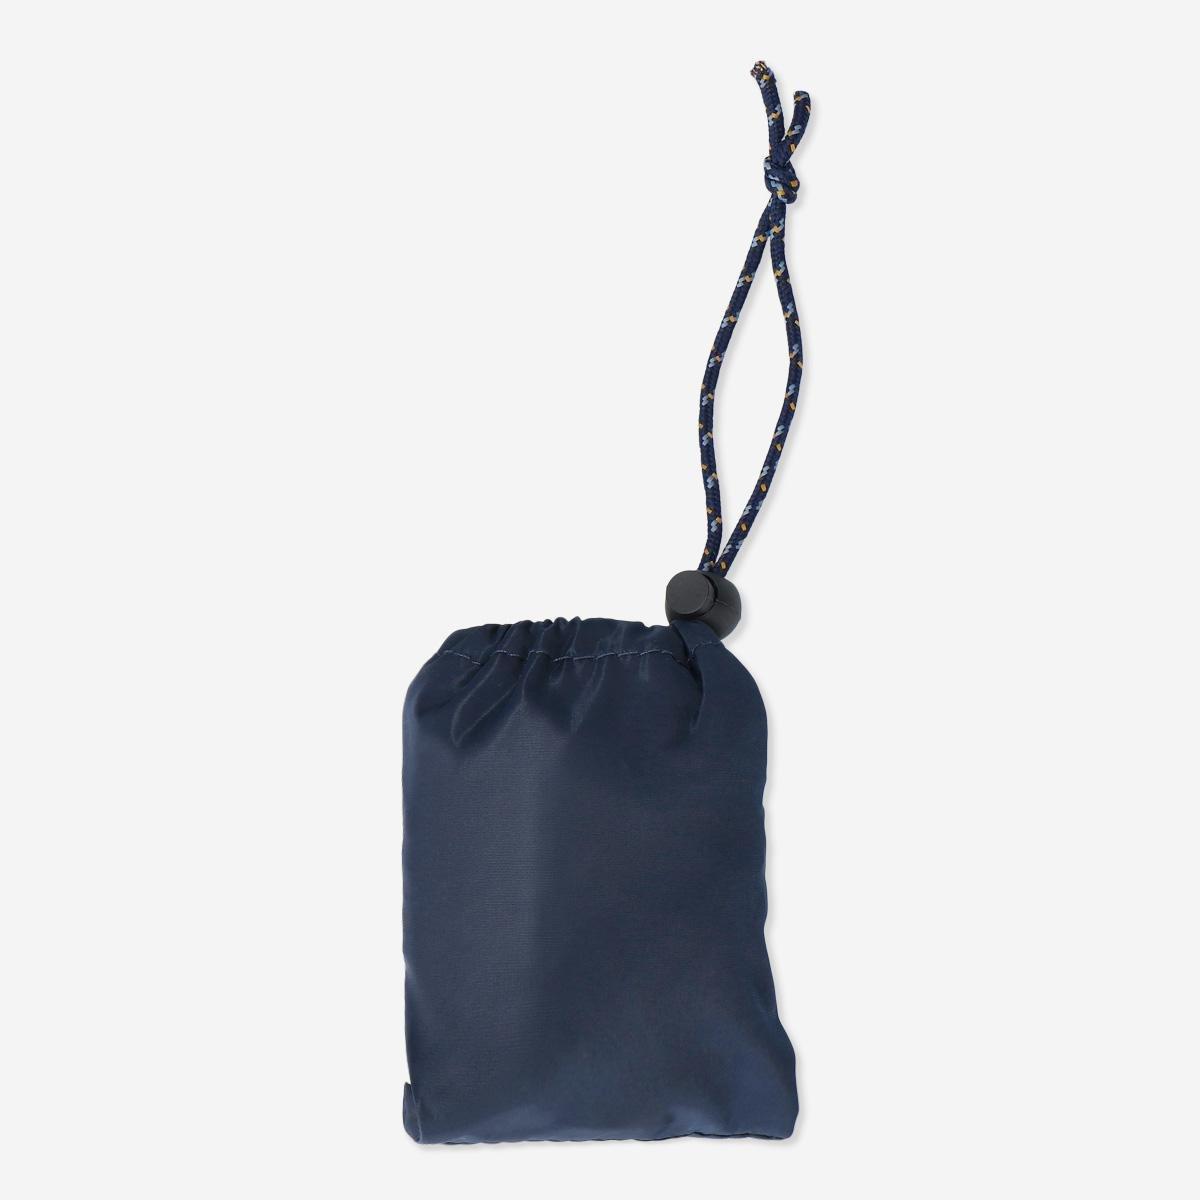 Blue backpack rain cover